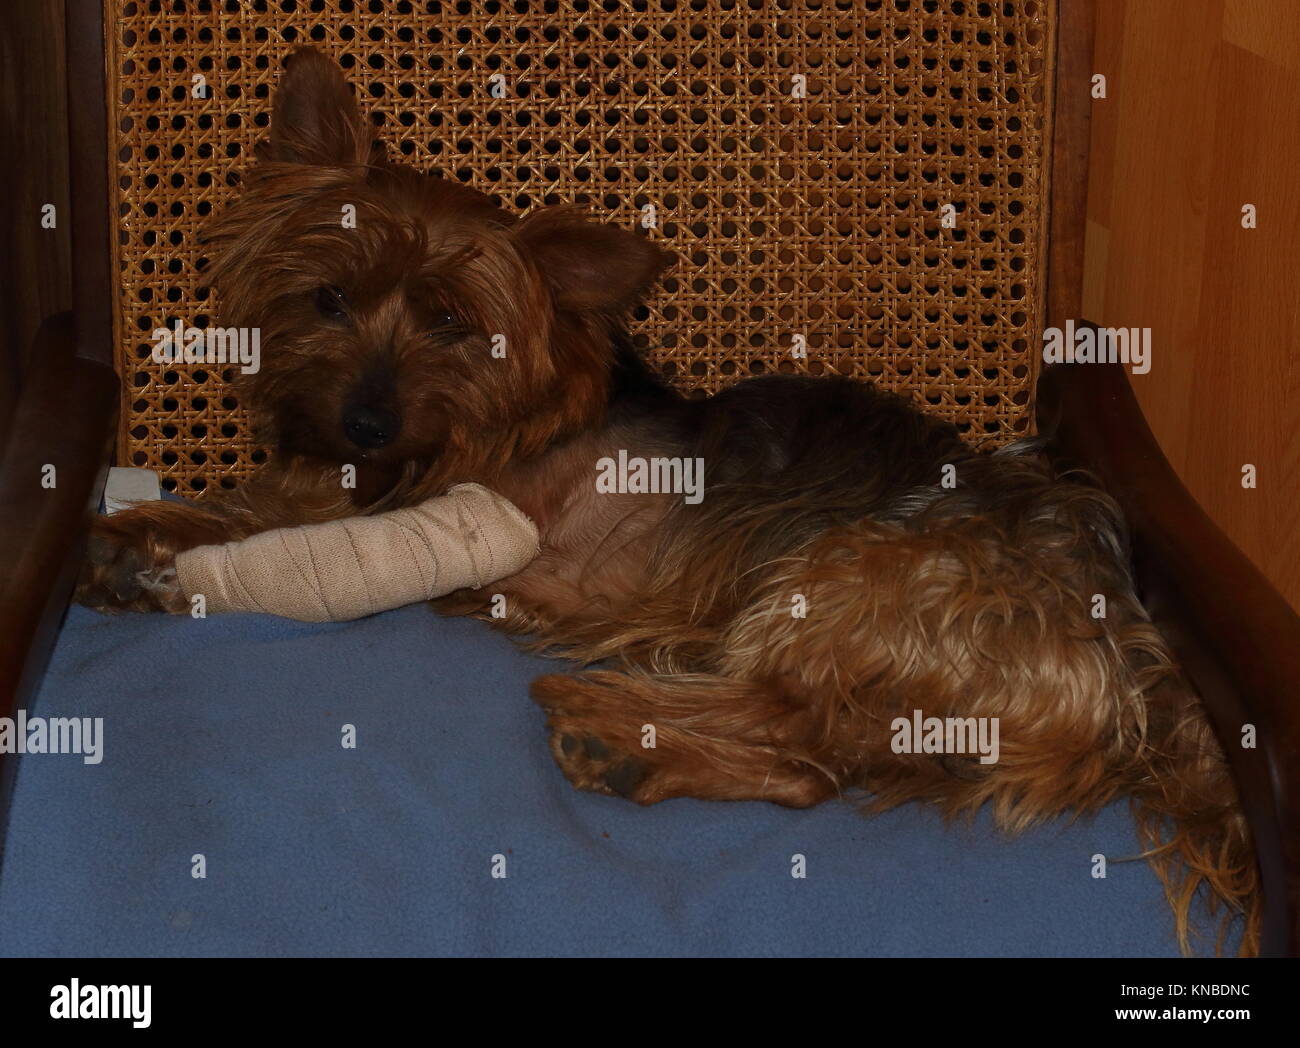 Piccolo Cane marrone con un bendato gamba anteriore giace su un cuscino blu su una comoda sedia, immagine in formato orizzontale Foto Stock